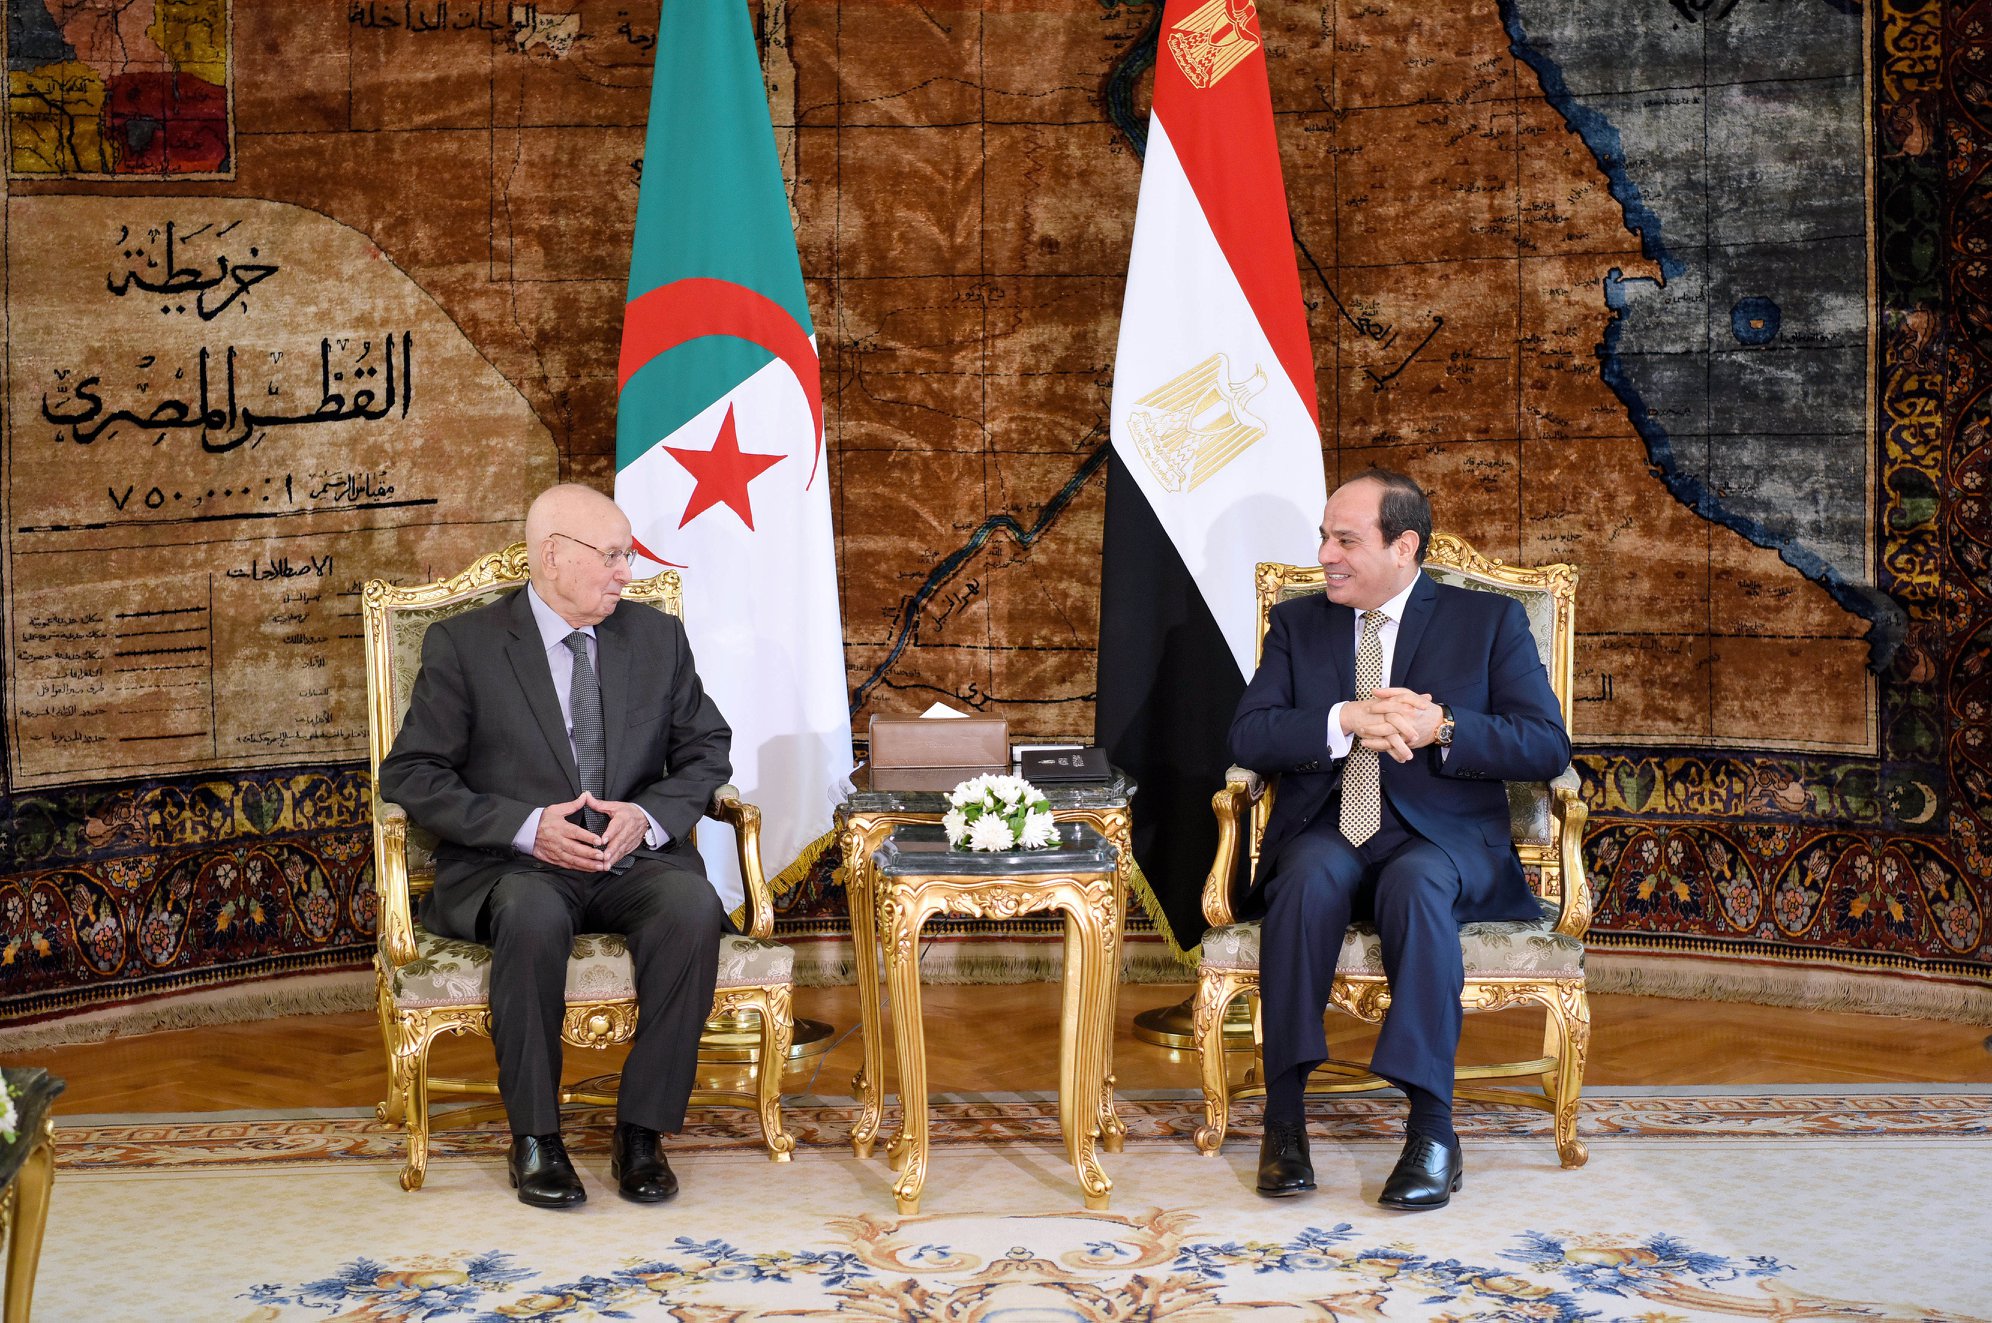 Egyptian President meets Algerian President